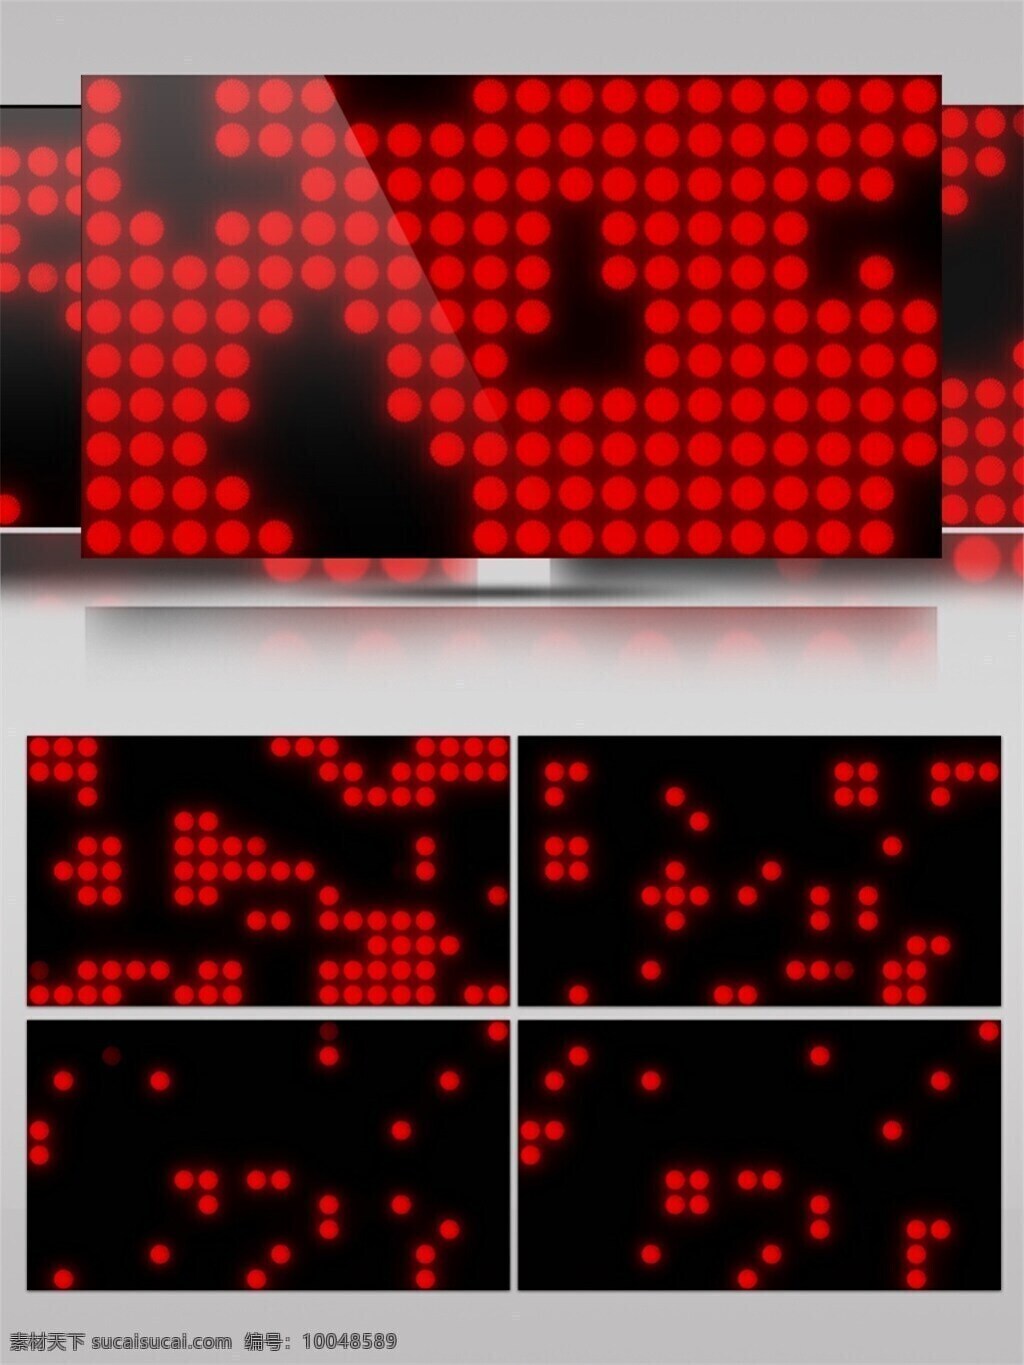 红色 矩阵 光 视频 点阵 电子 光束 节目灯光 视觉享受 唯美背景素材